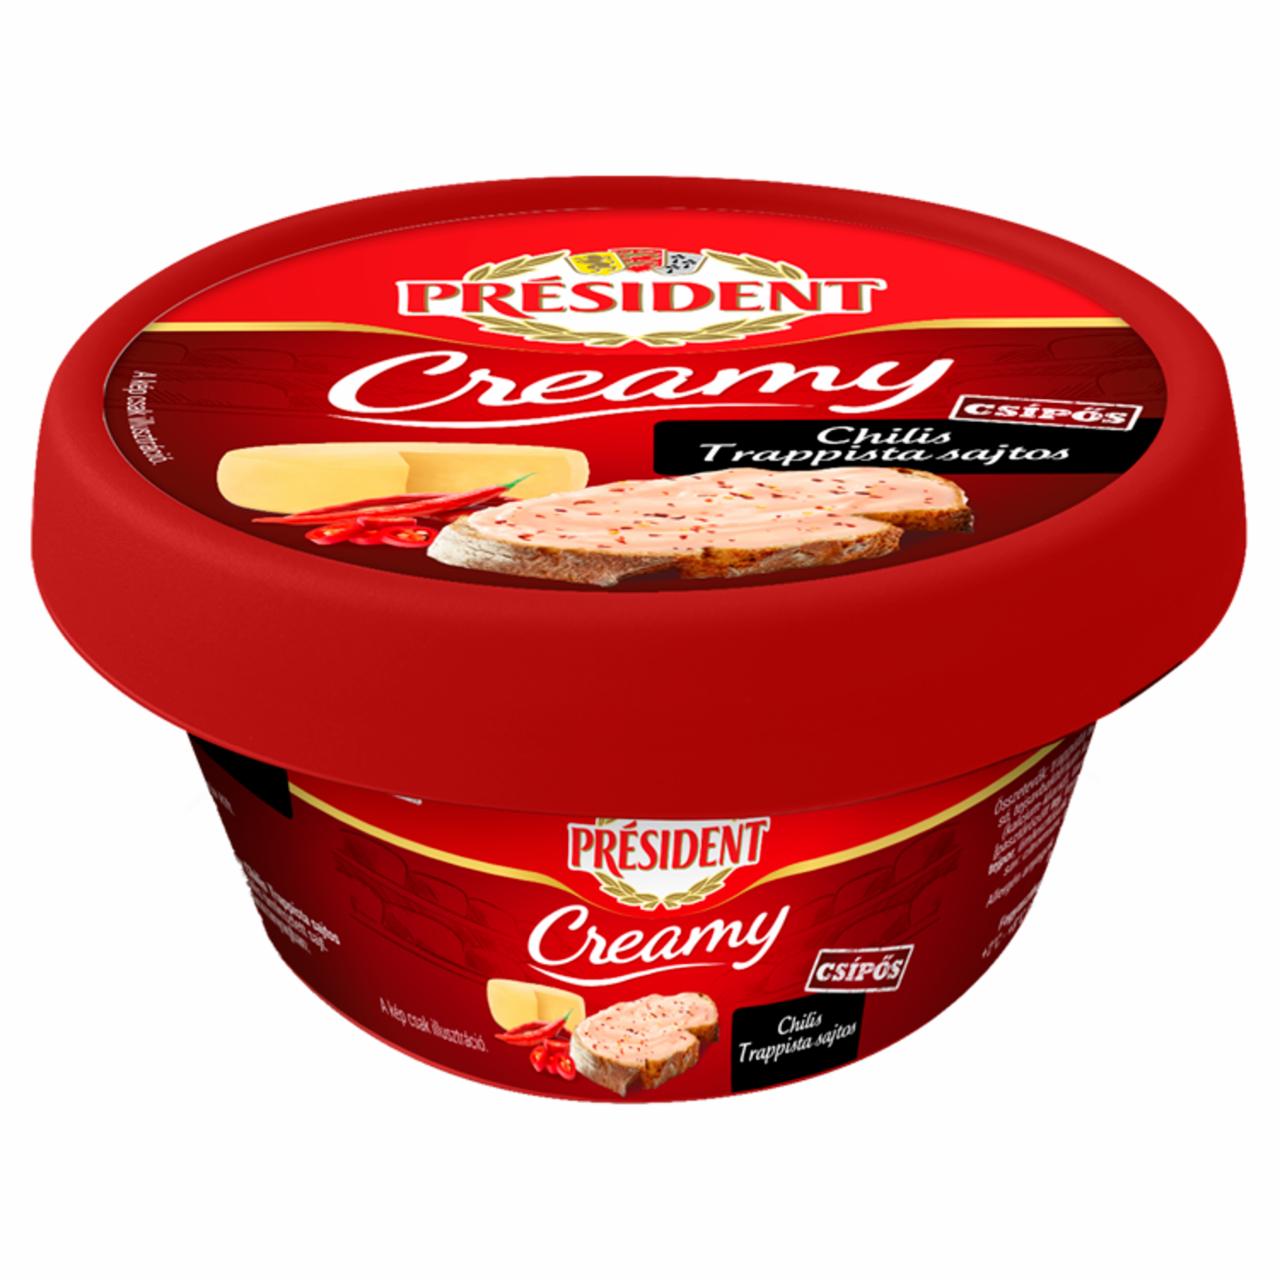 Képek - Président Creamy chilis trappista sajtos kenhető ömlesztett sajt 125 g